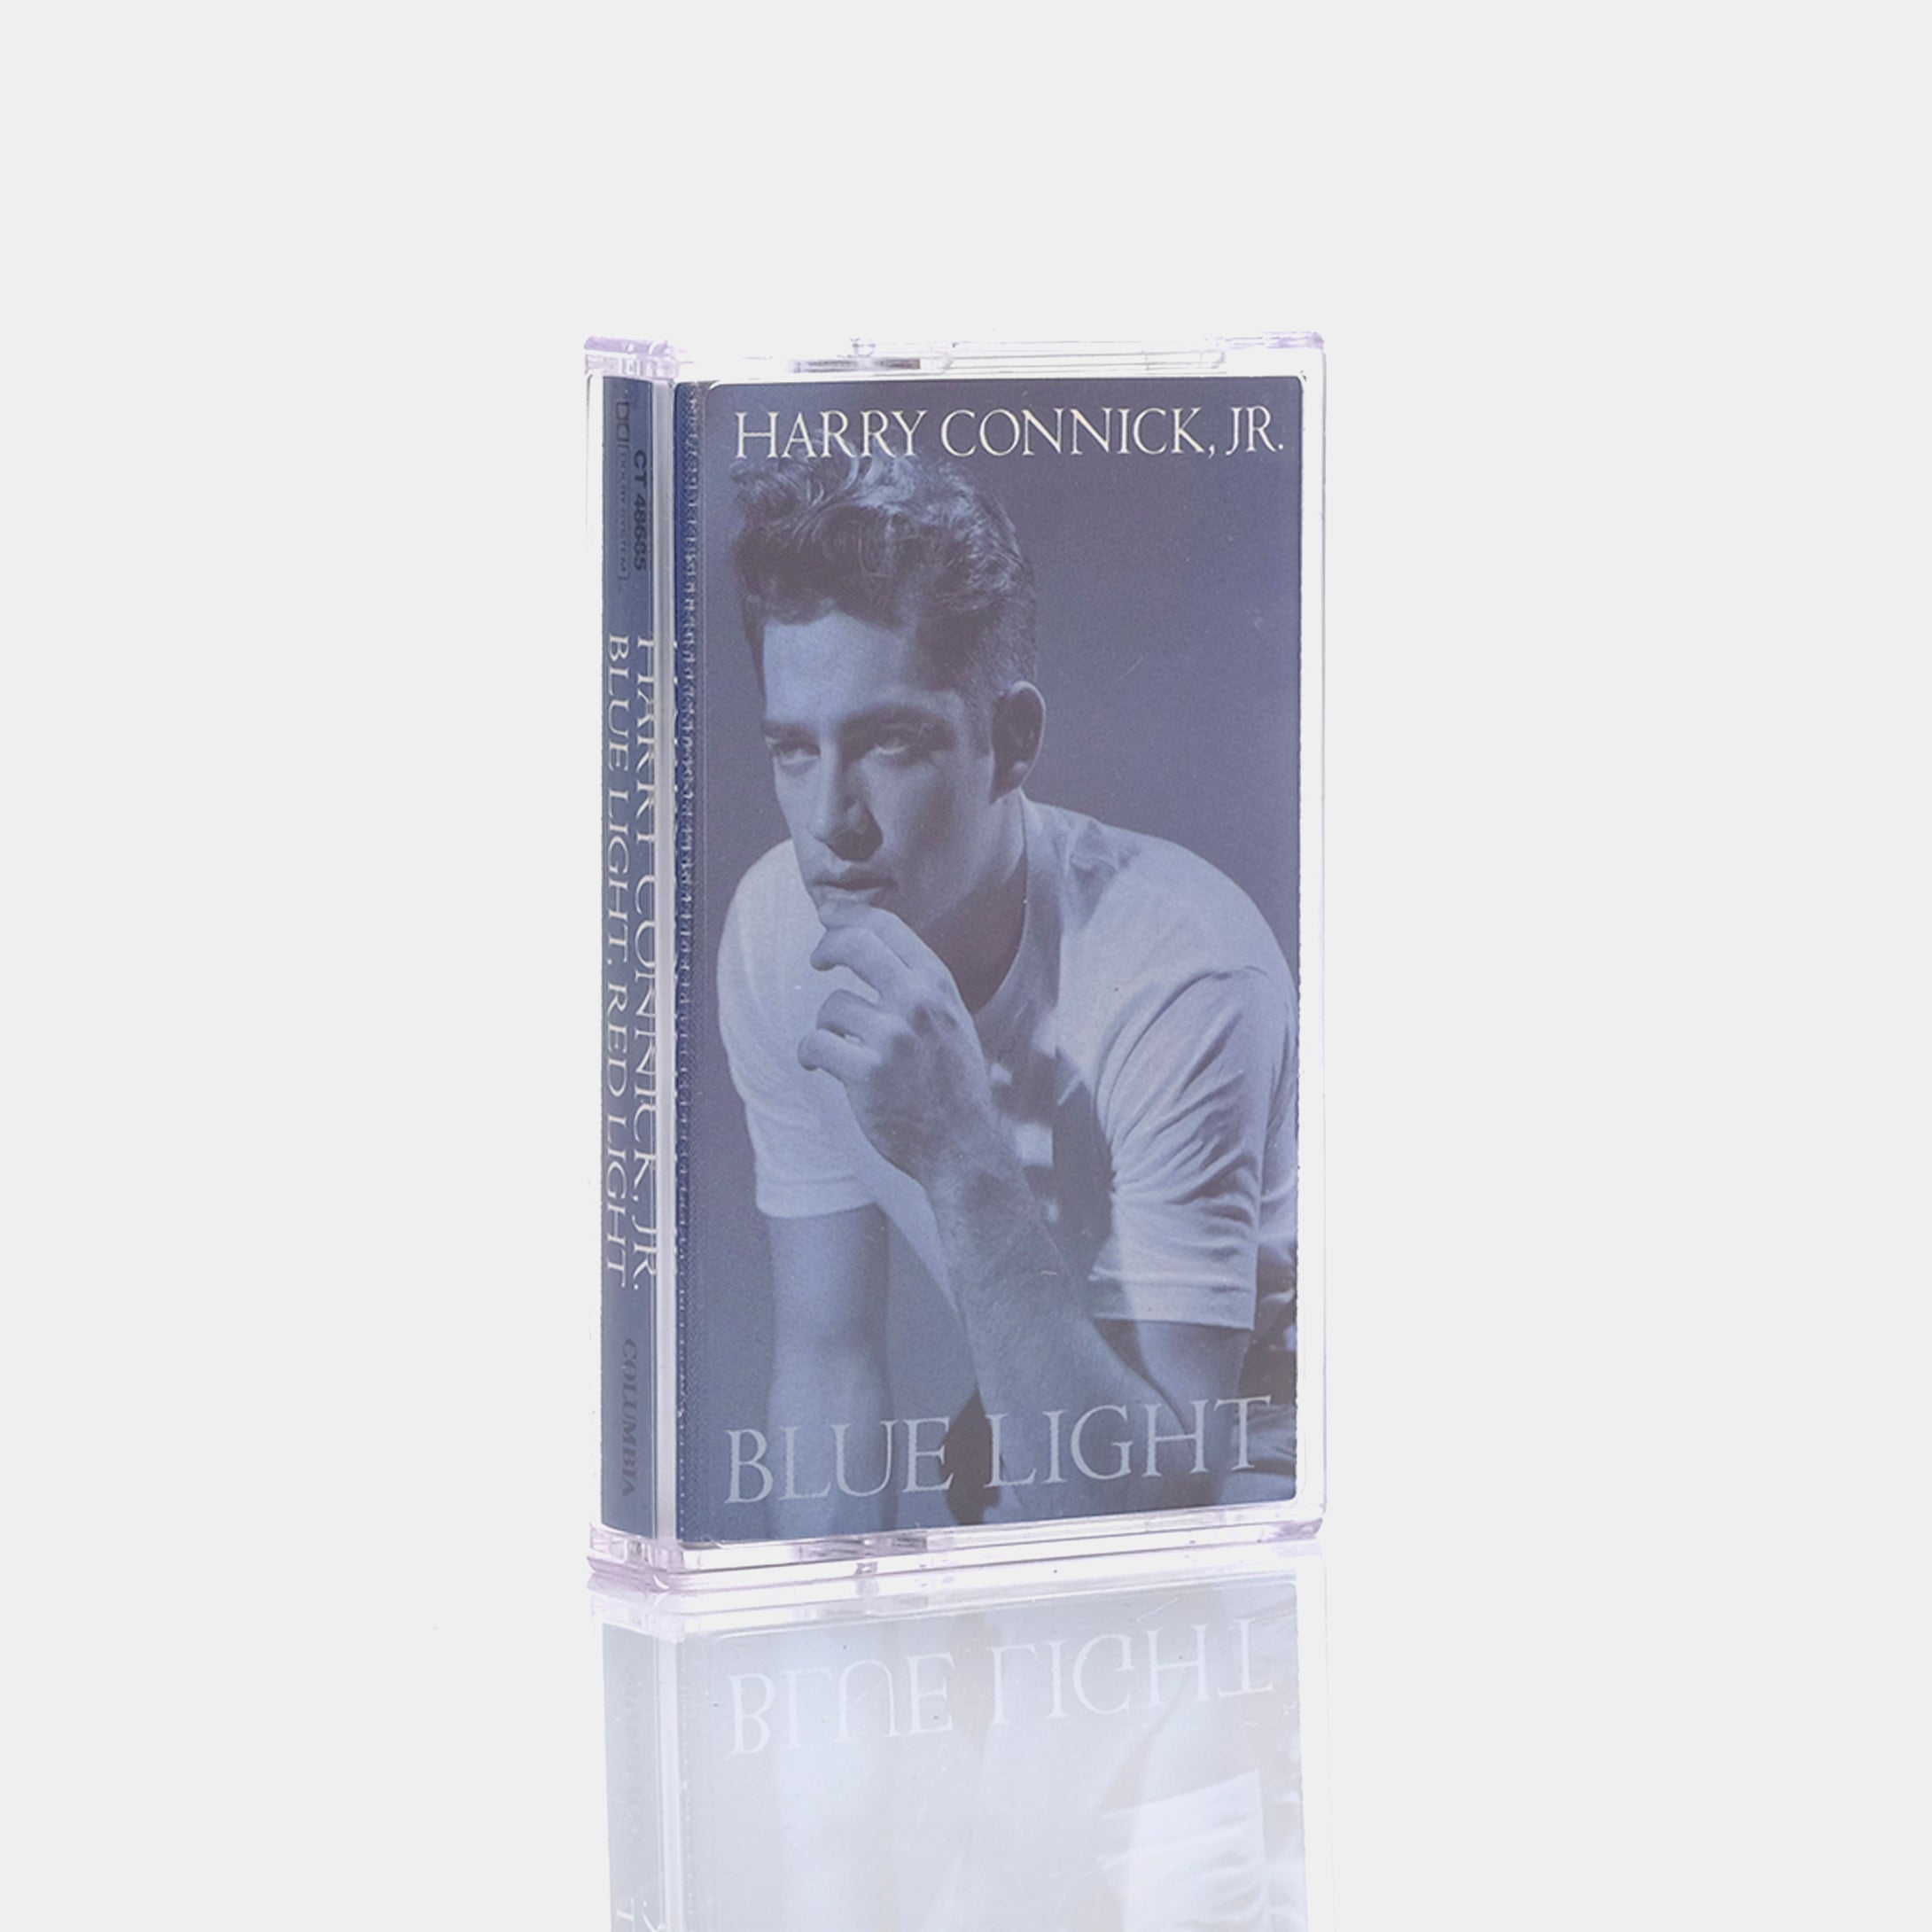 Harry Connick, Jr. - Blue Light, Red Light Cassette Tape